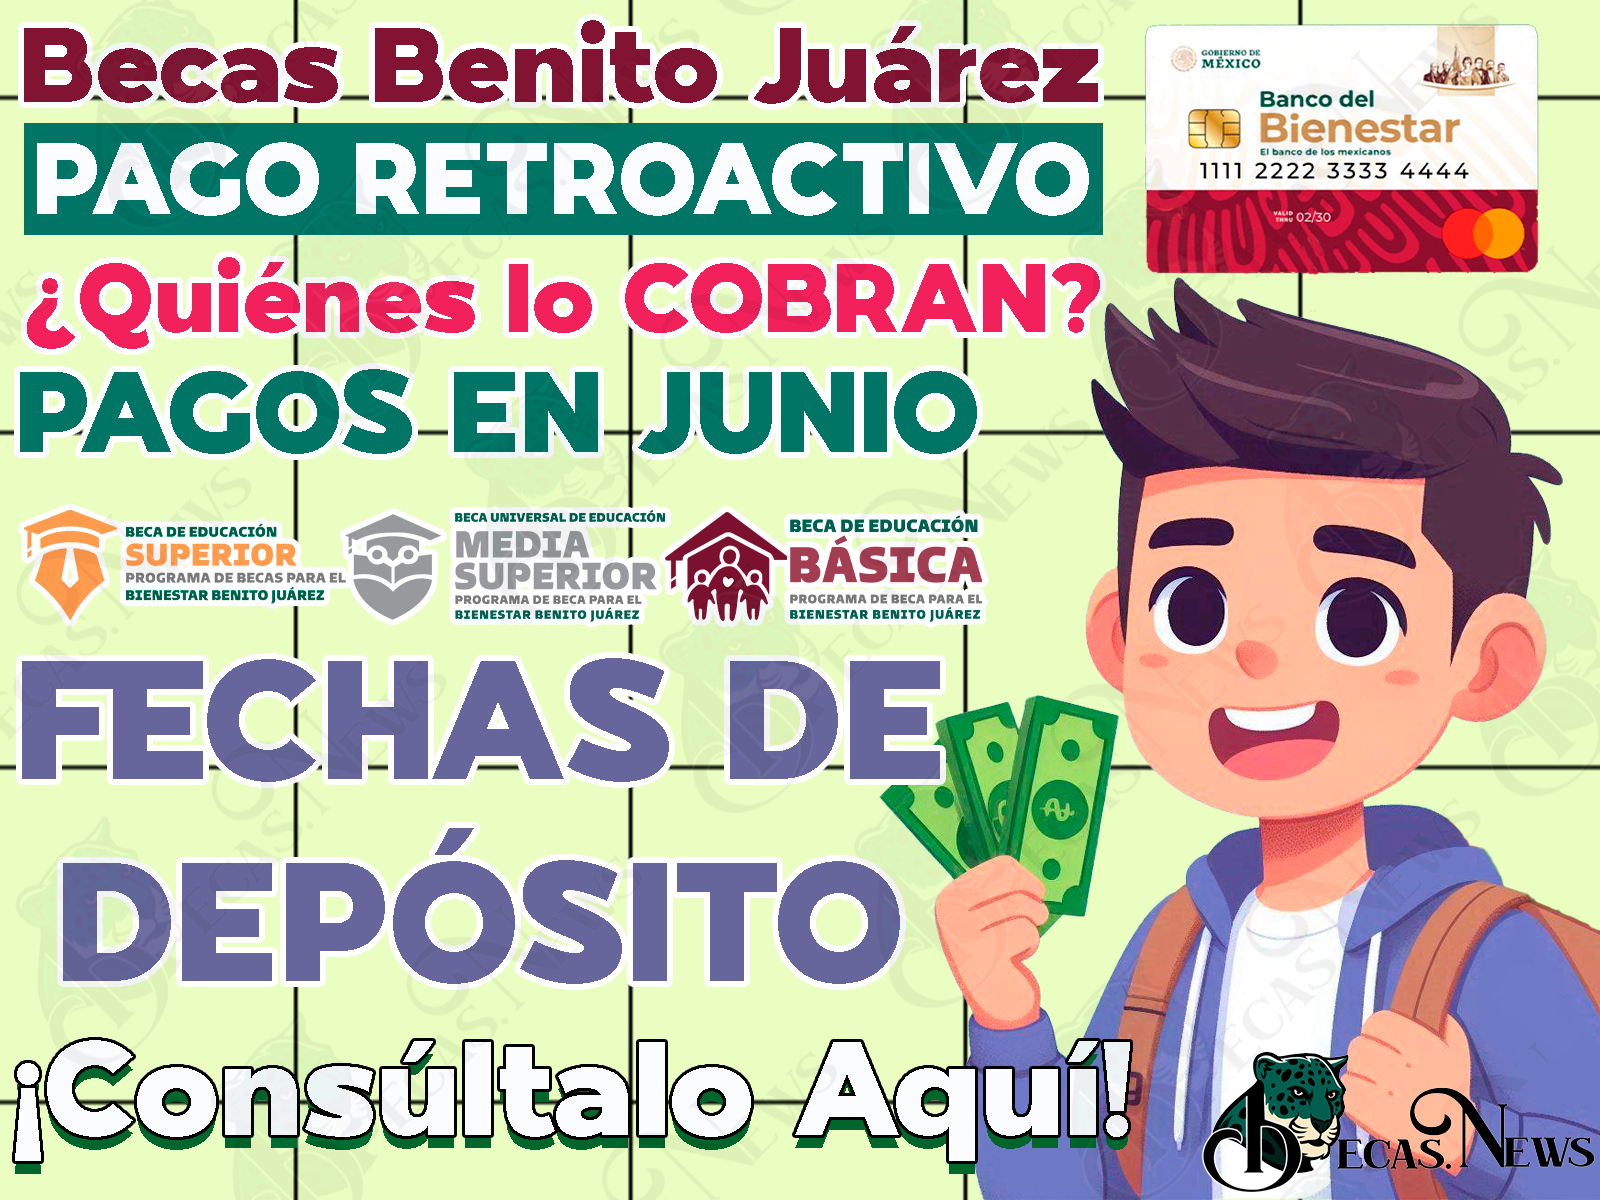 Estos son los beneficiarios de las Becas Benito Juárez que cobrarán el PAGO RETROACTIVO. ¿Cuándo será depositado?